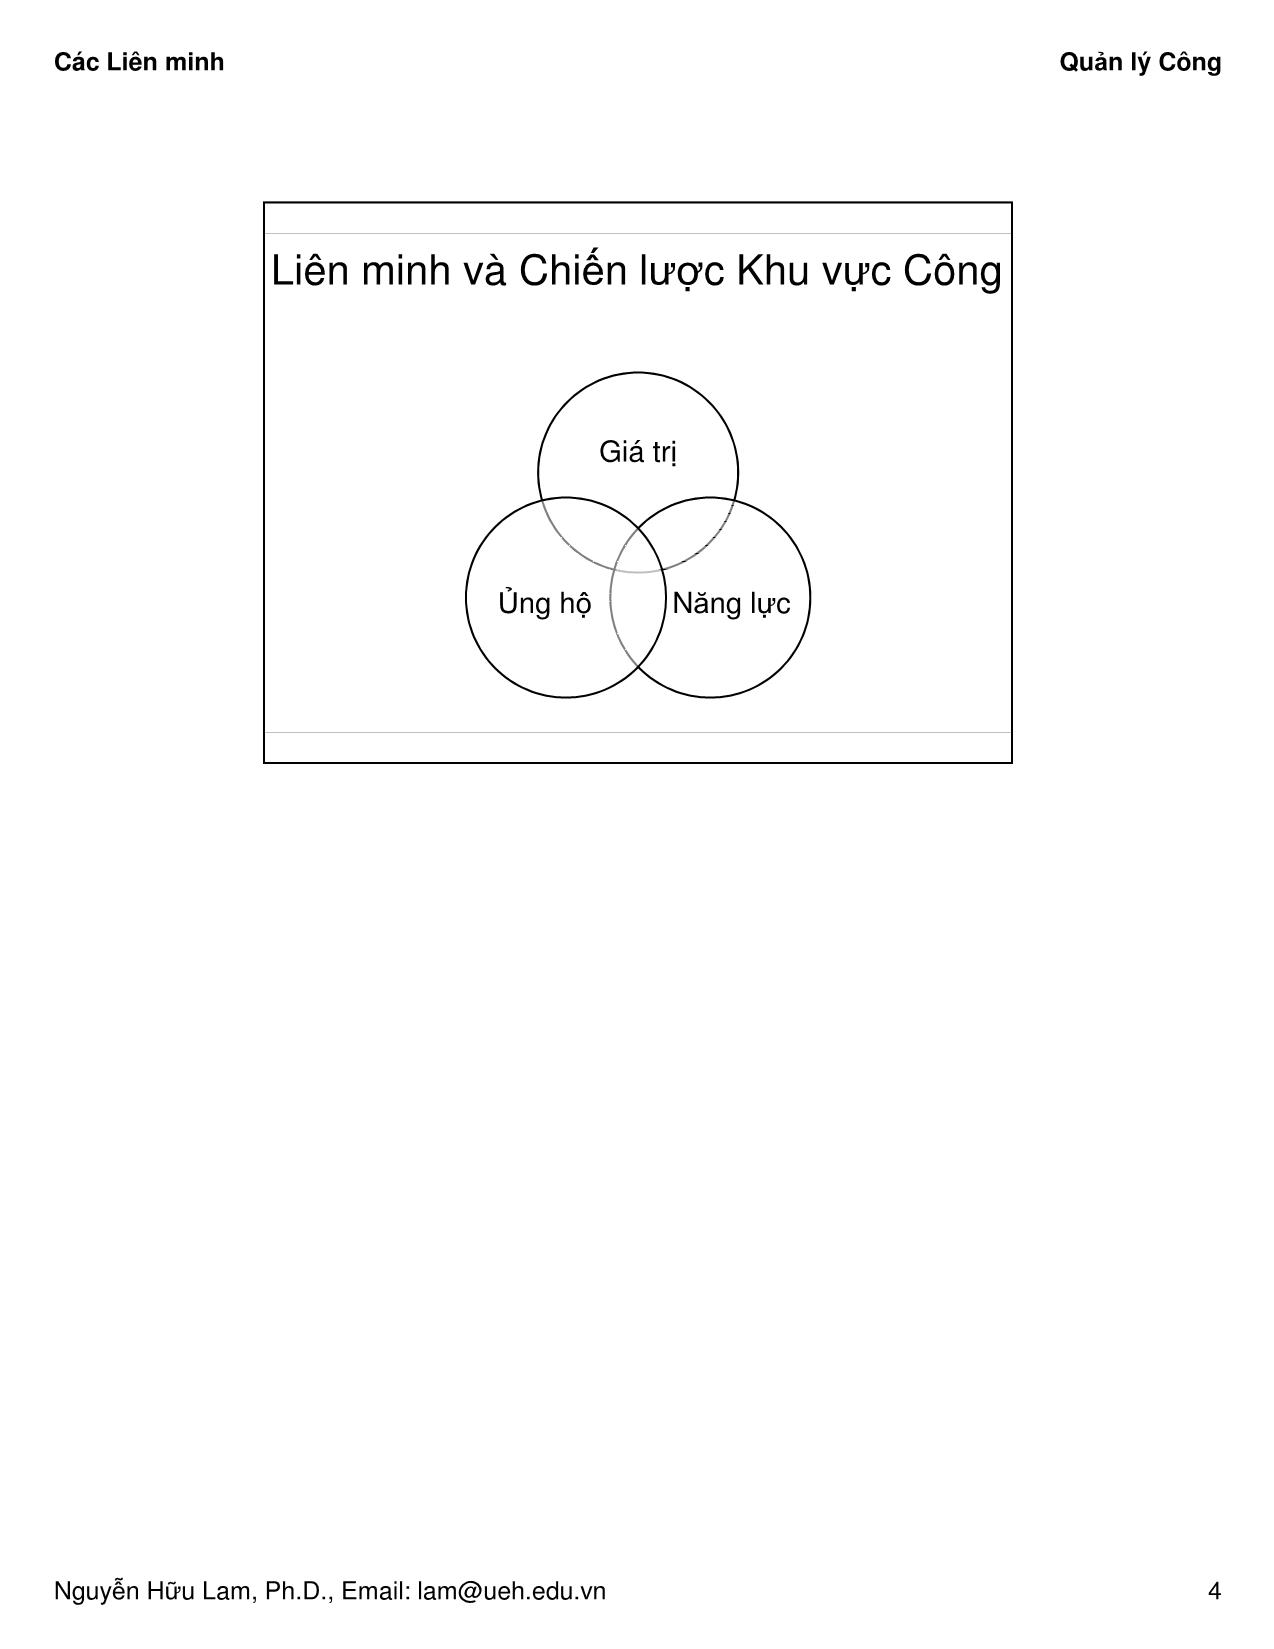 Bài giảng Quản lý công - Các Liên minh - Nguyễn Hữu Lam trang 4